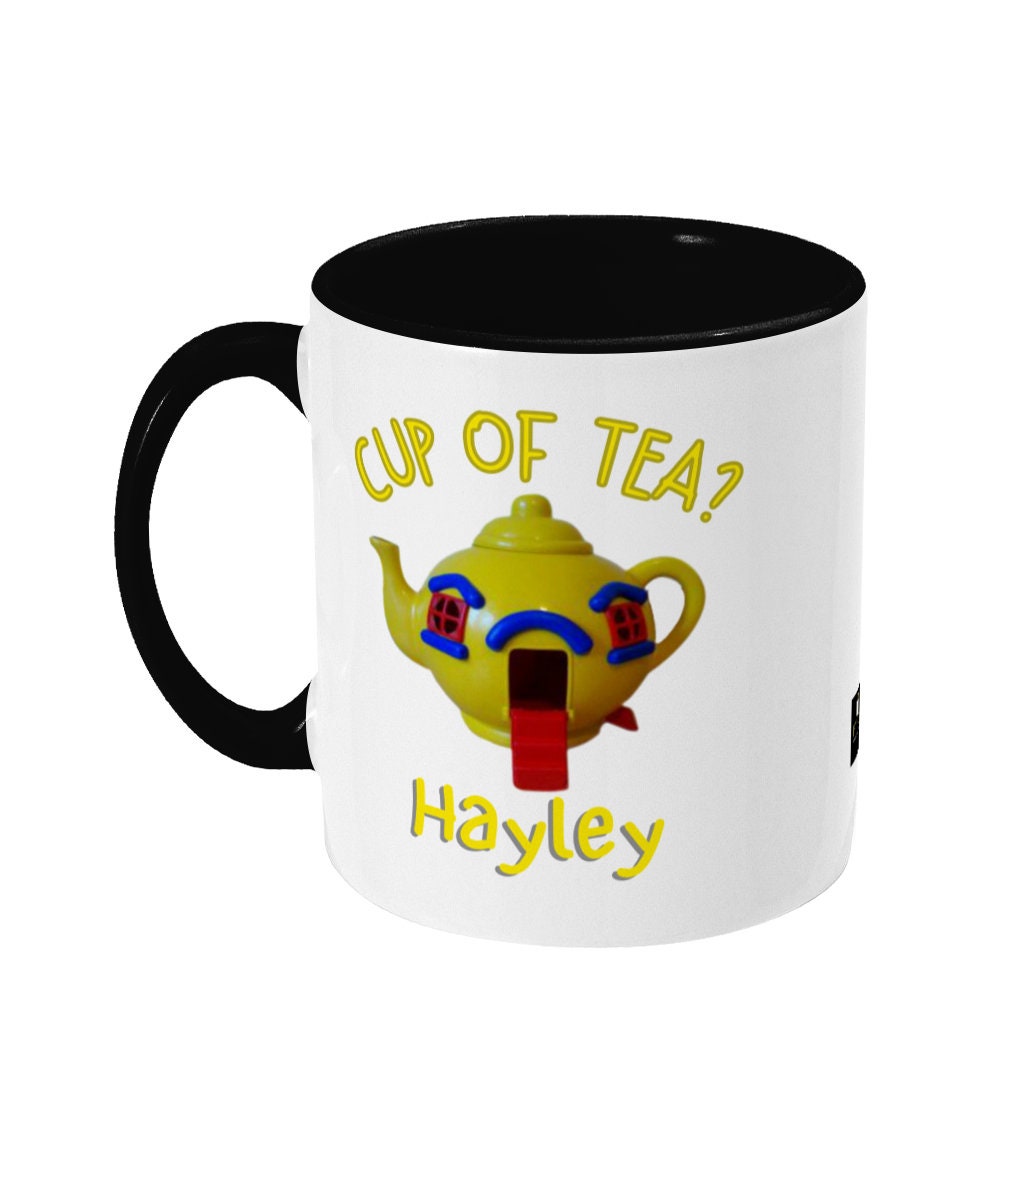 Big yellow teapot novelty coffee mug 80's memorabilia gift